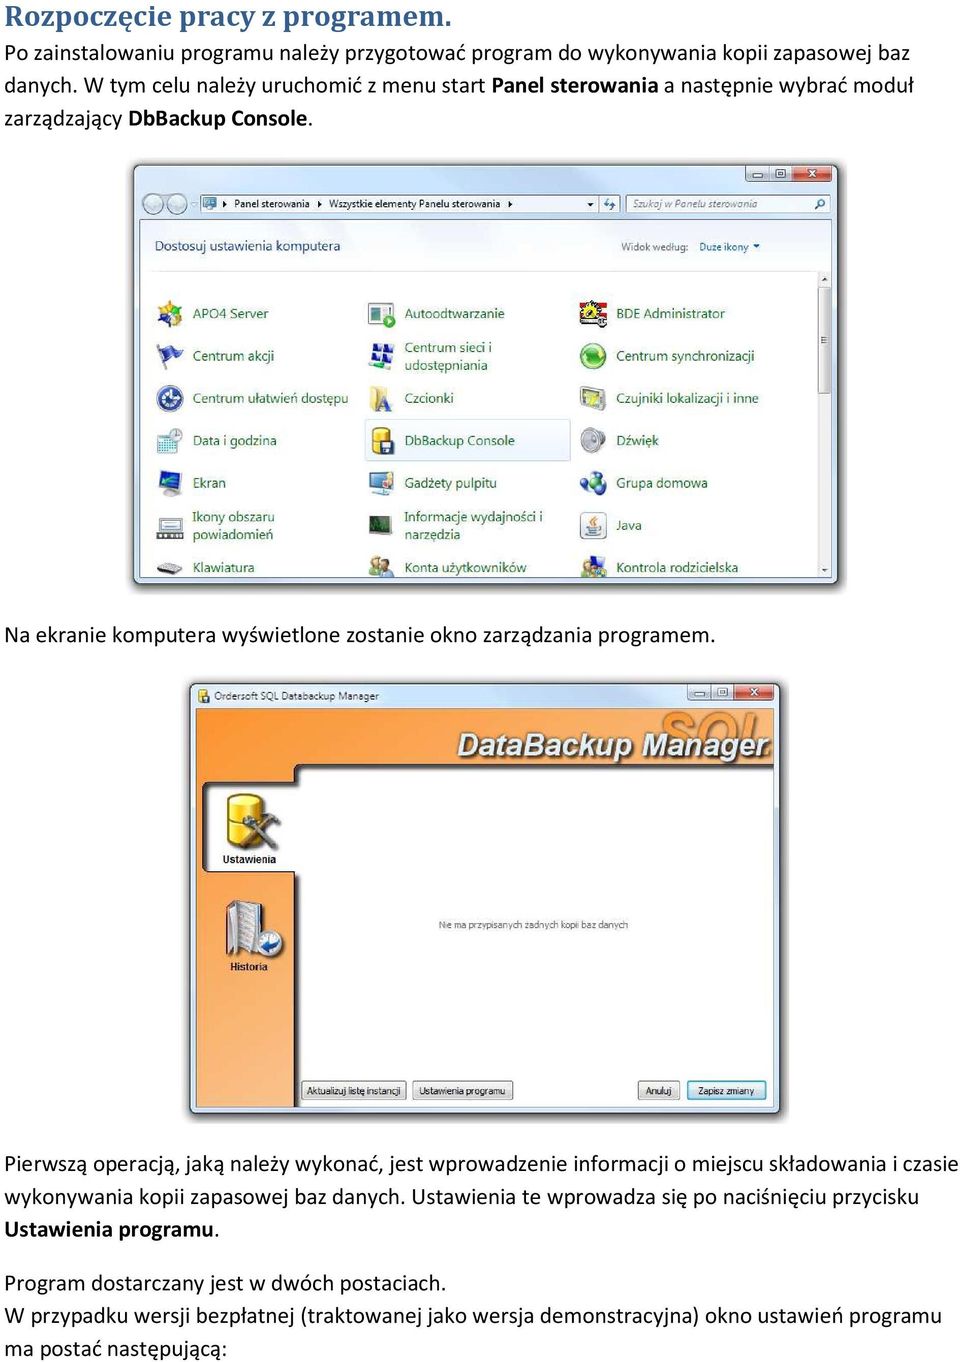 Na ekranie komputera wyświetlone zostanie okno zarządzania programem.